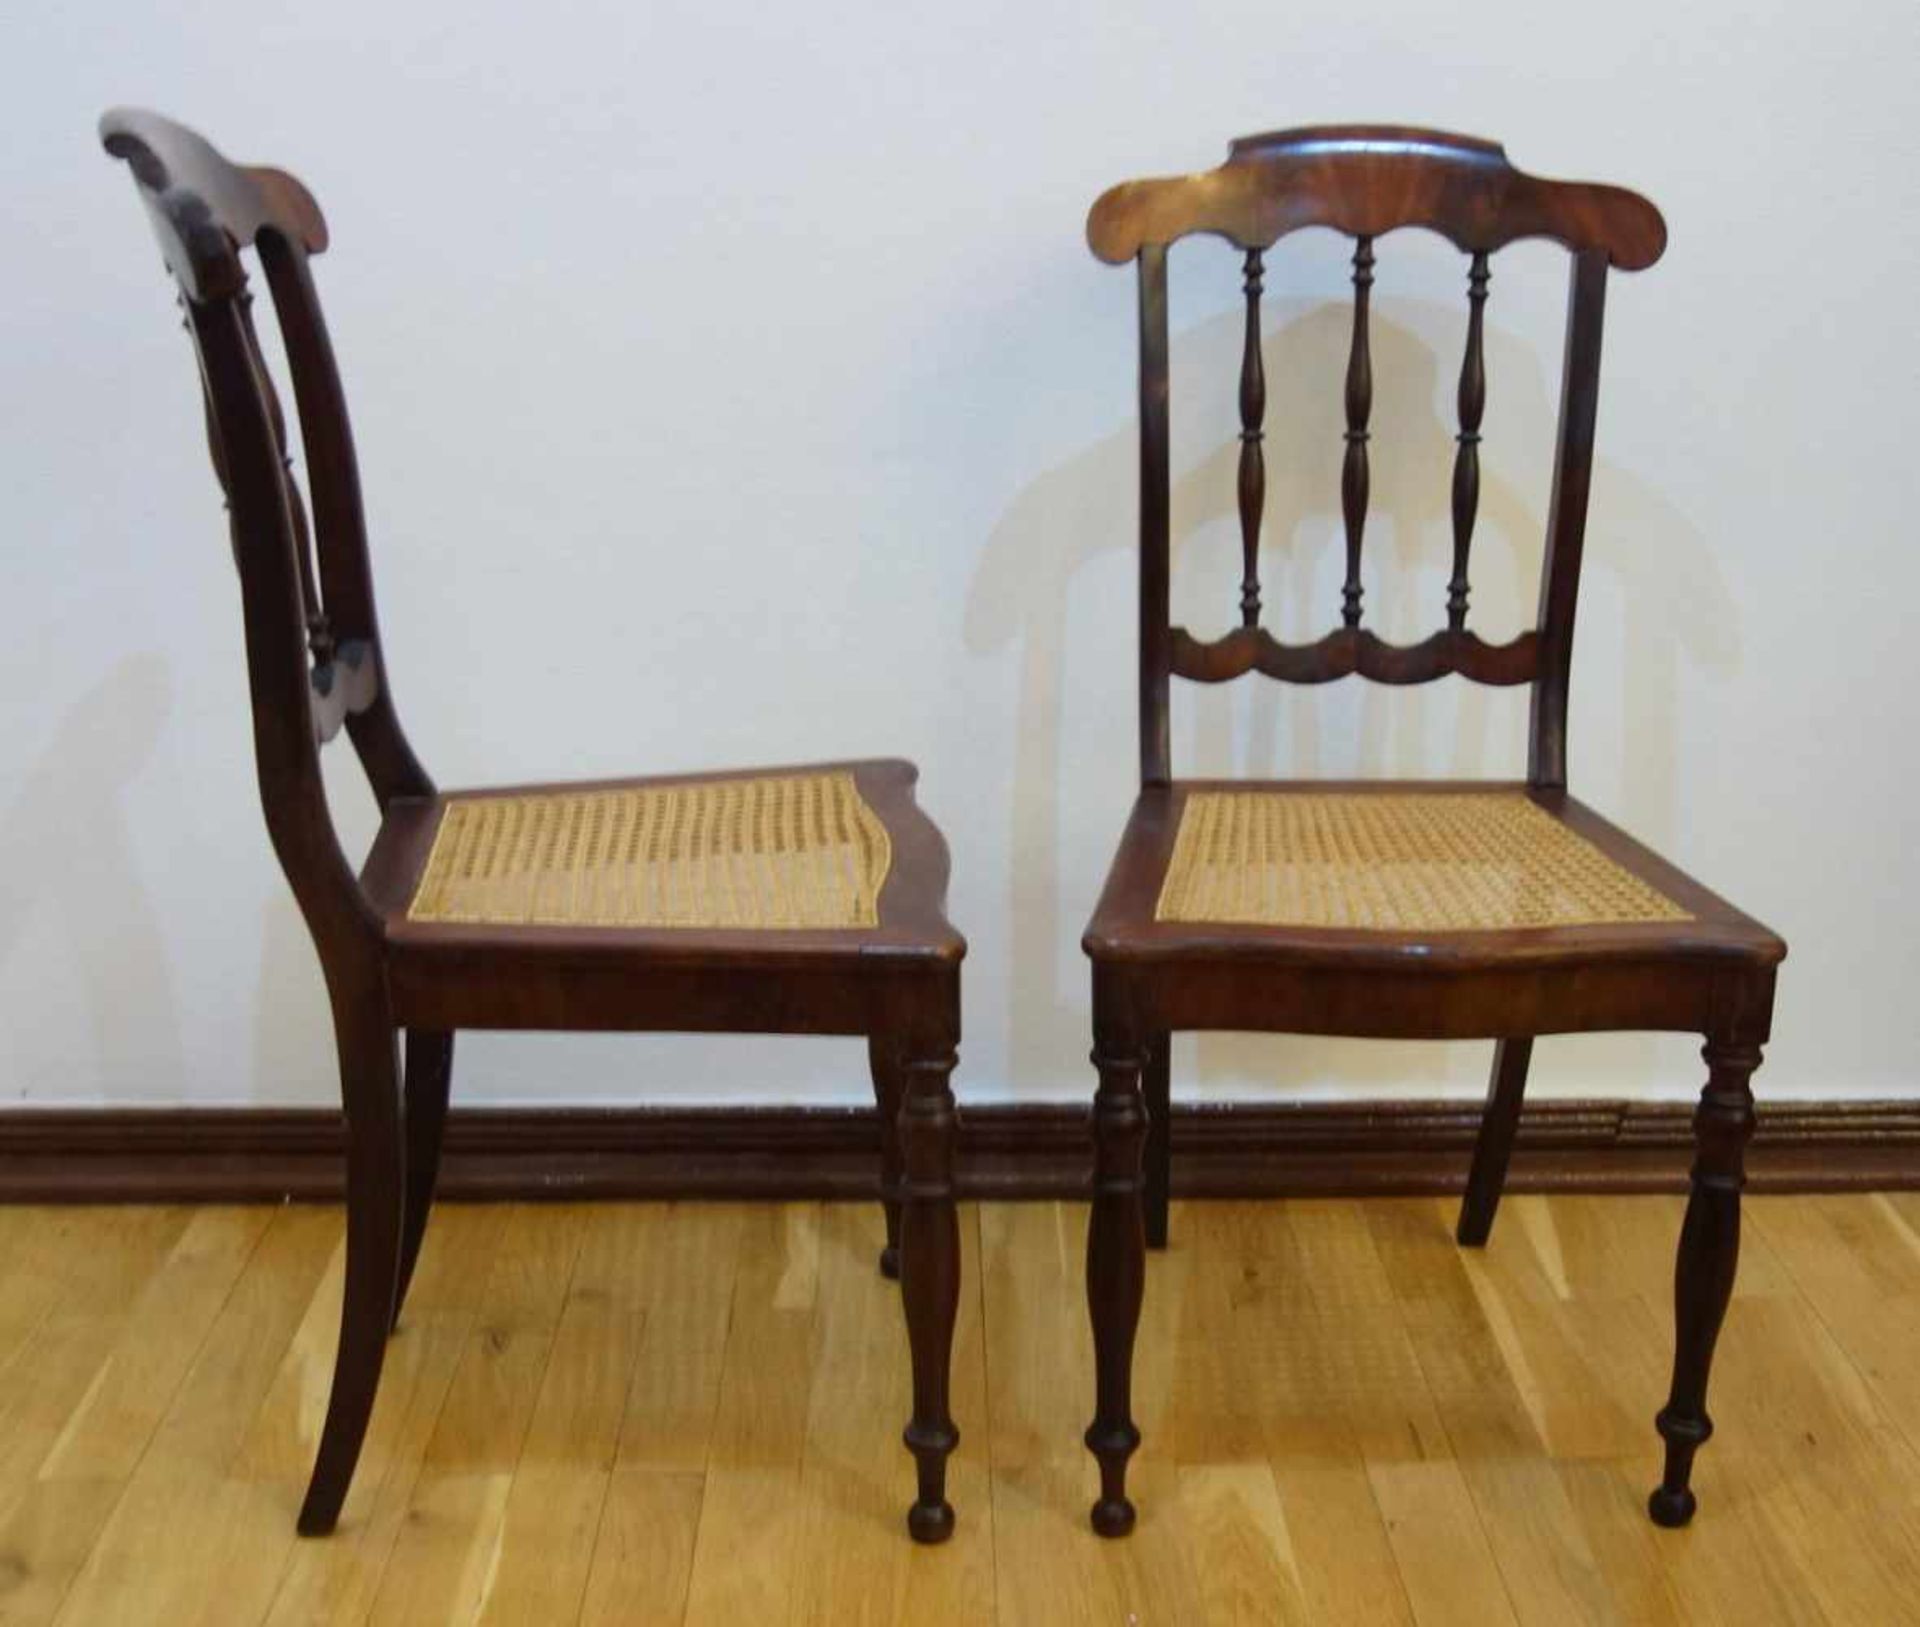 Paar Stühle, Biedermeier, um 1840Mahagoni-Furnier, geschweifte Rückenlehne mit 3 Streben, Sitzfläche - Bild 2 aus 2